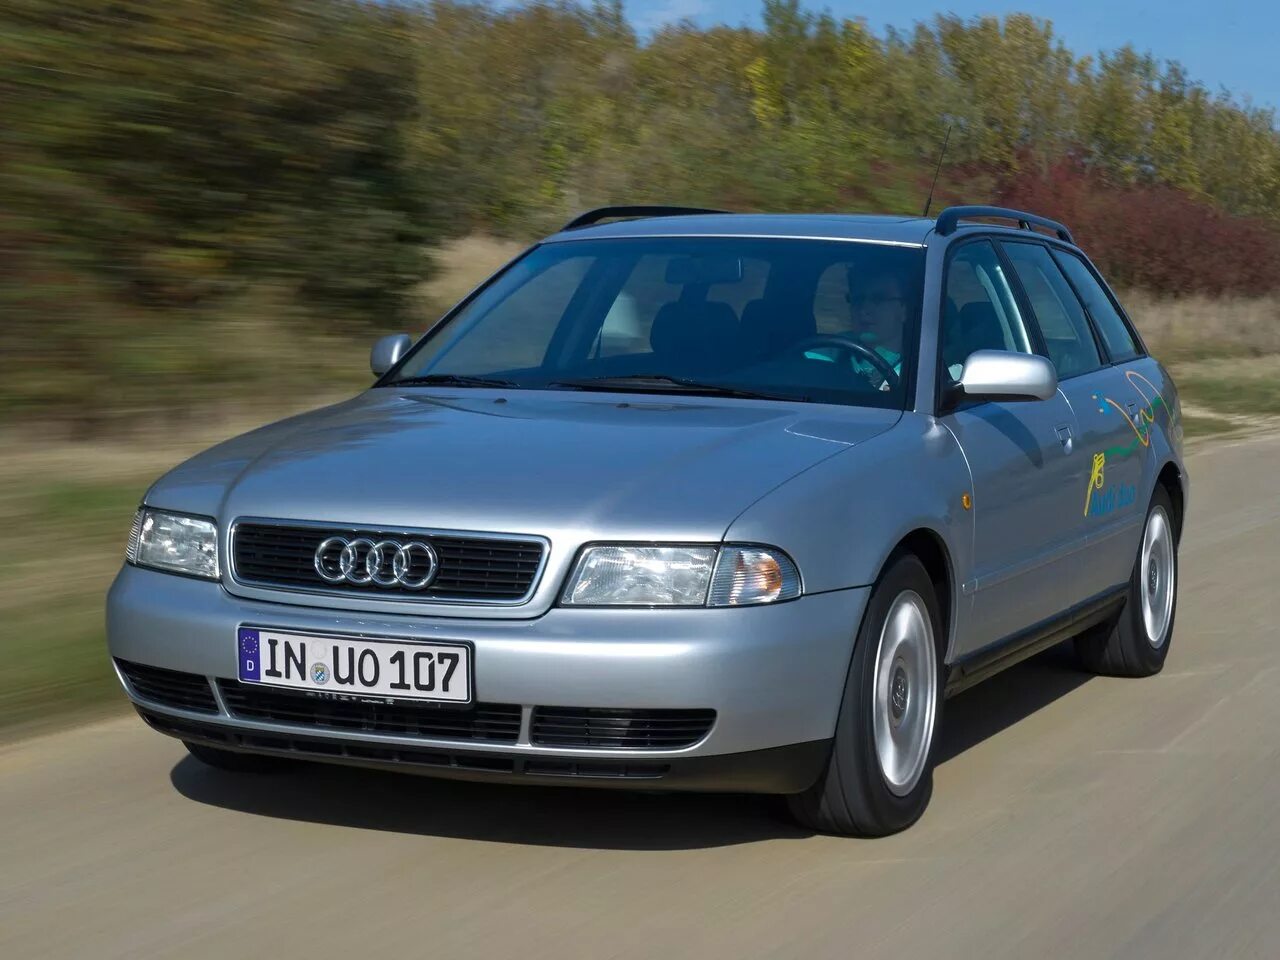 Купить ауди а4 б5 универсал. Audi a4 b5 универсал. Audi a4 b5 2000. Audi a4 b5 1994. Audi a4 b5 1996.